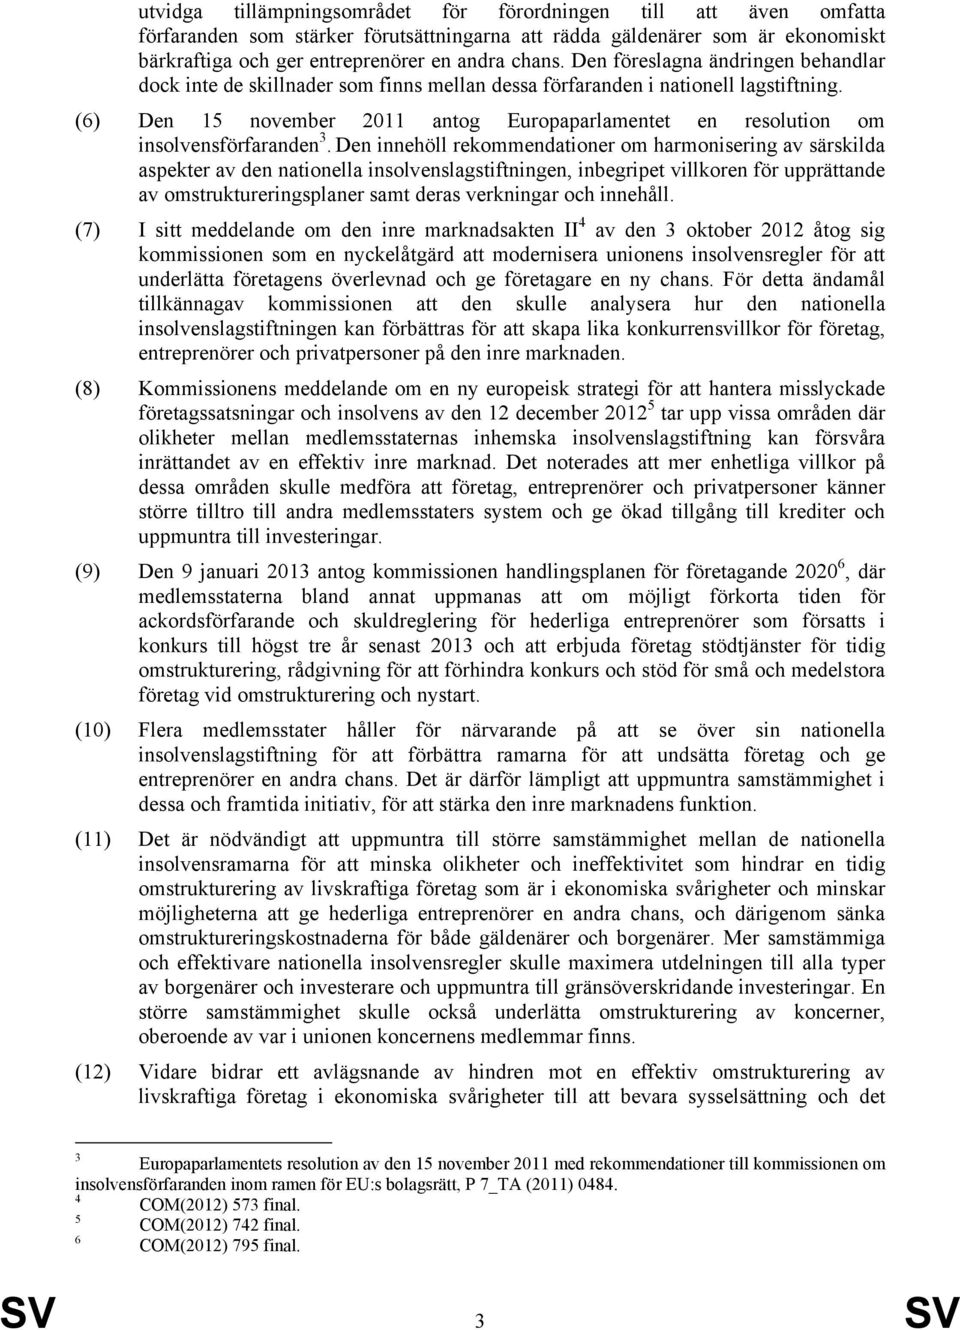 (6) Den 15 november 2011 antog Europaparlamentet en resolution om insolvensförfaranden 3.